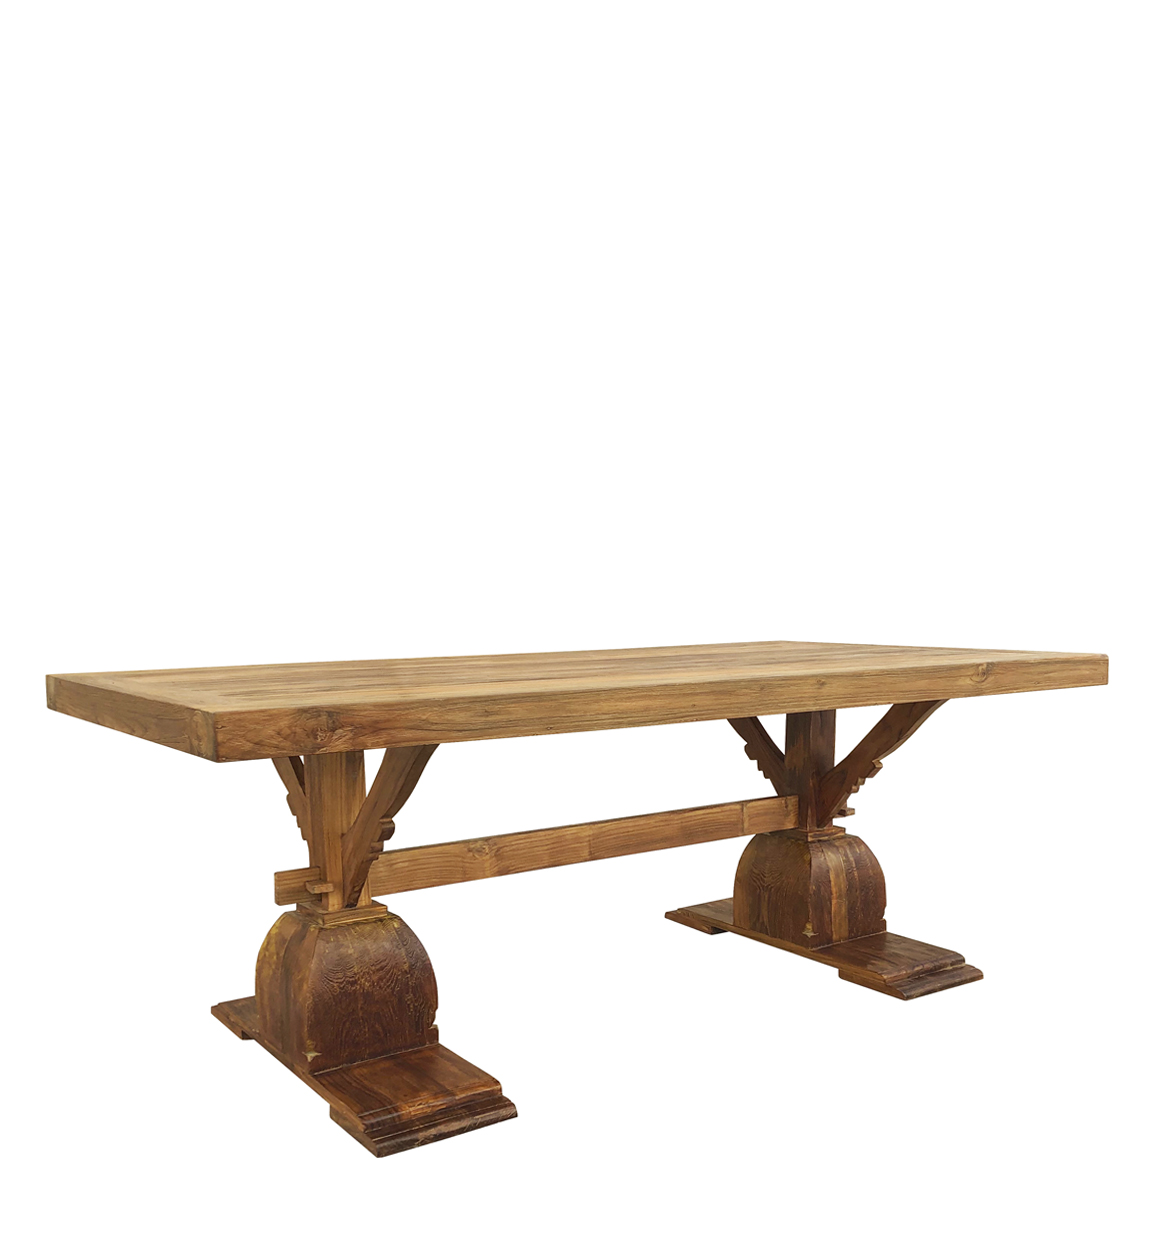 Patas de madera para mesa de comedor, 2 posiciones - Astideco